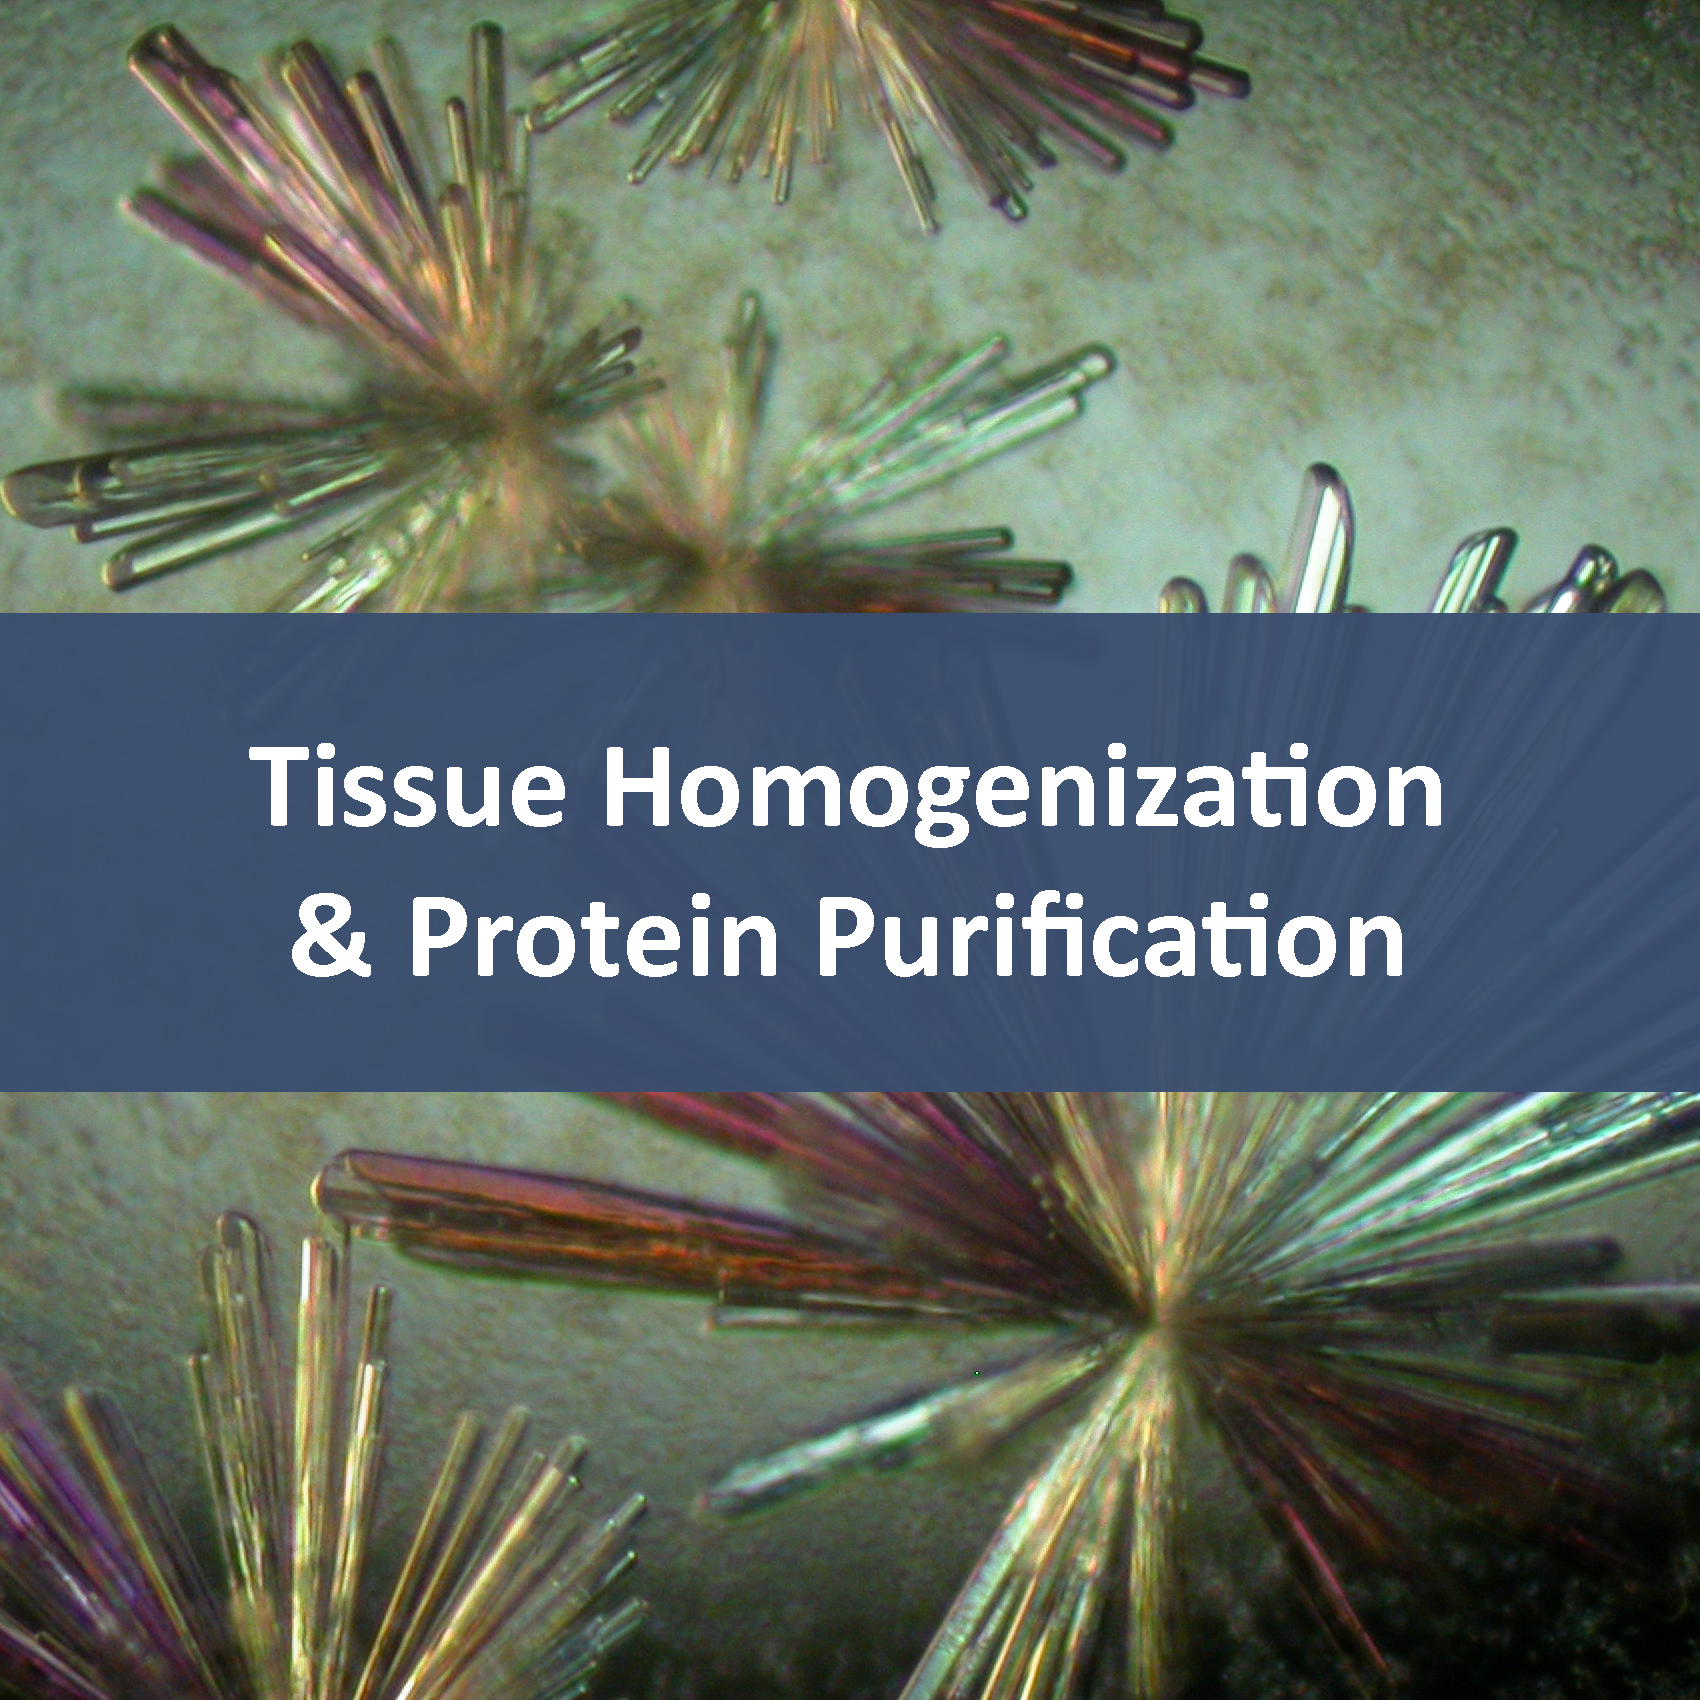 Tissue Homogenization & Protein Purification